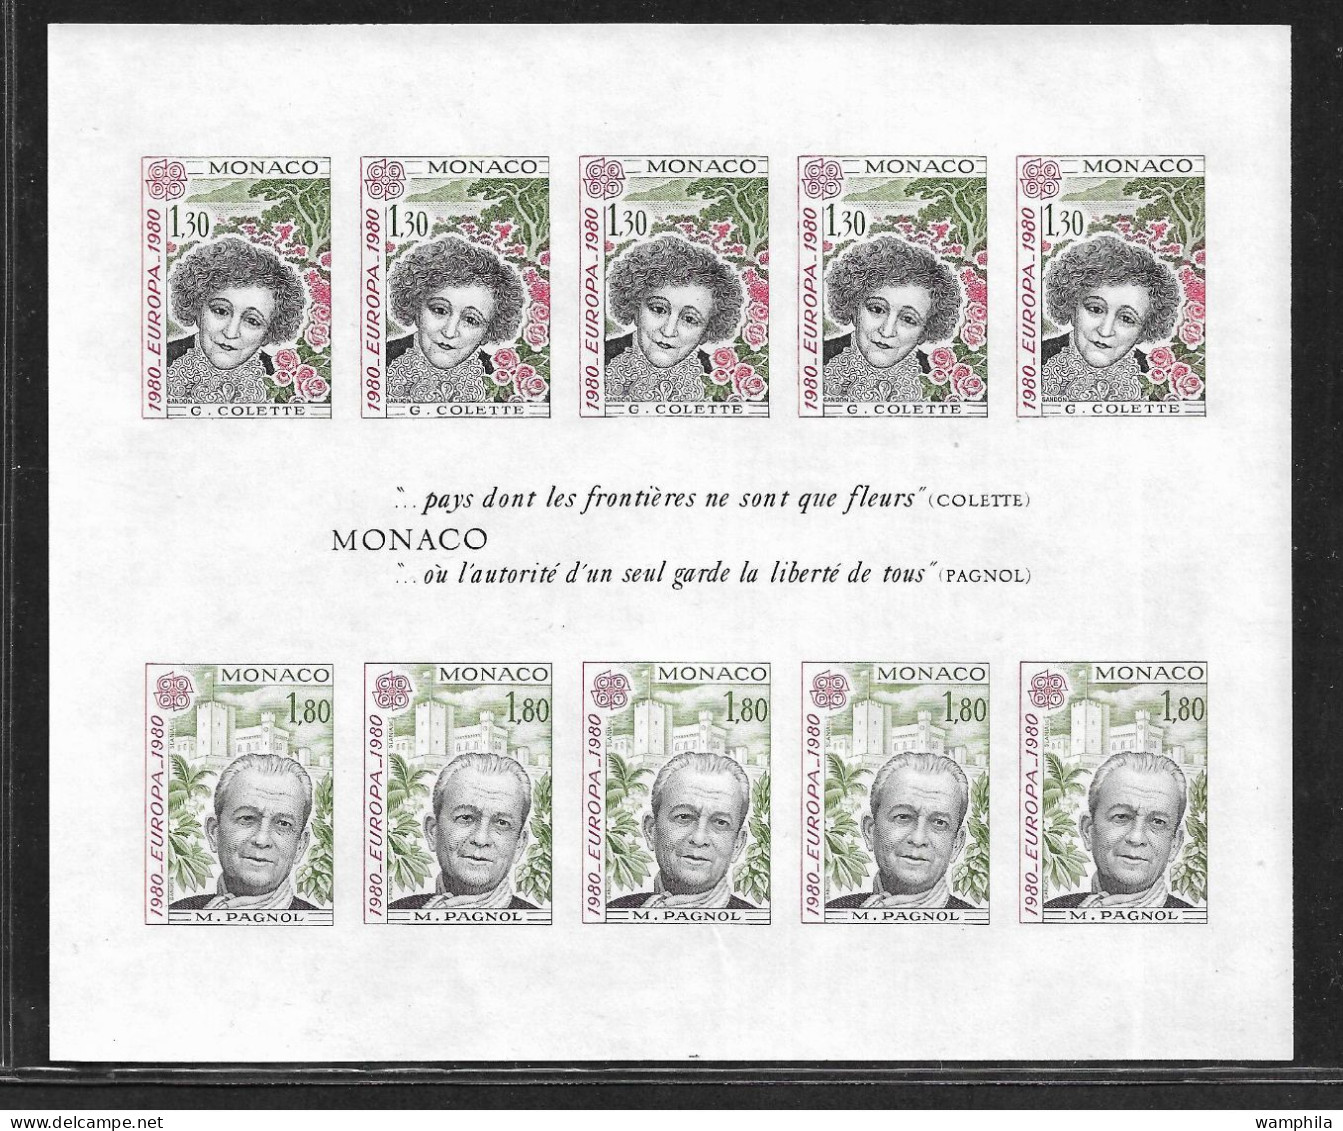 Monaco Bloc N°18a** NON Dentelé. Europa 1980 (S.G.Colette, M.Pagnol). RARE. Cote 540€ - Variétés